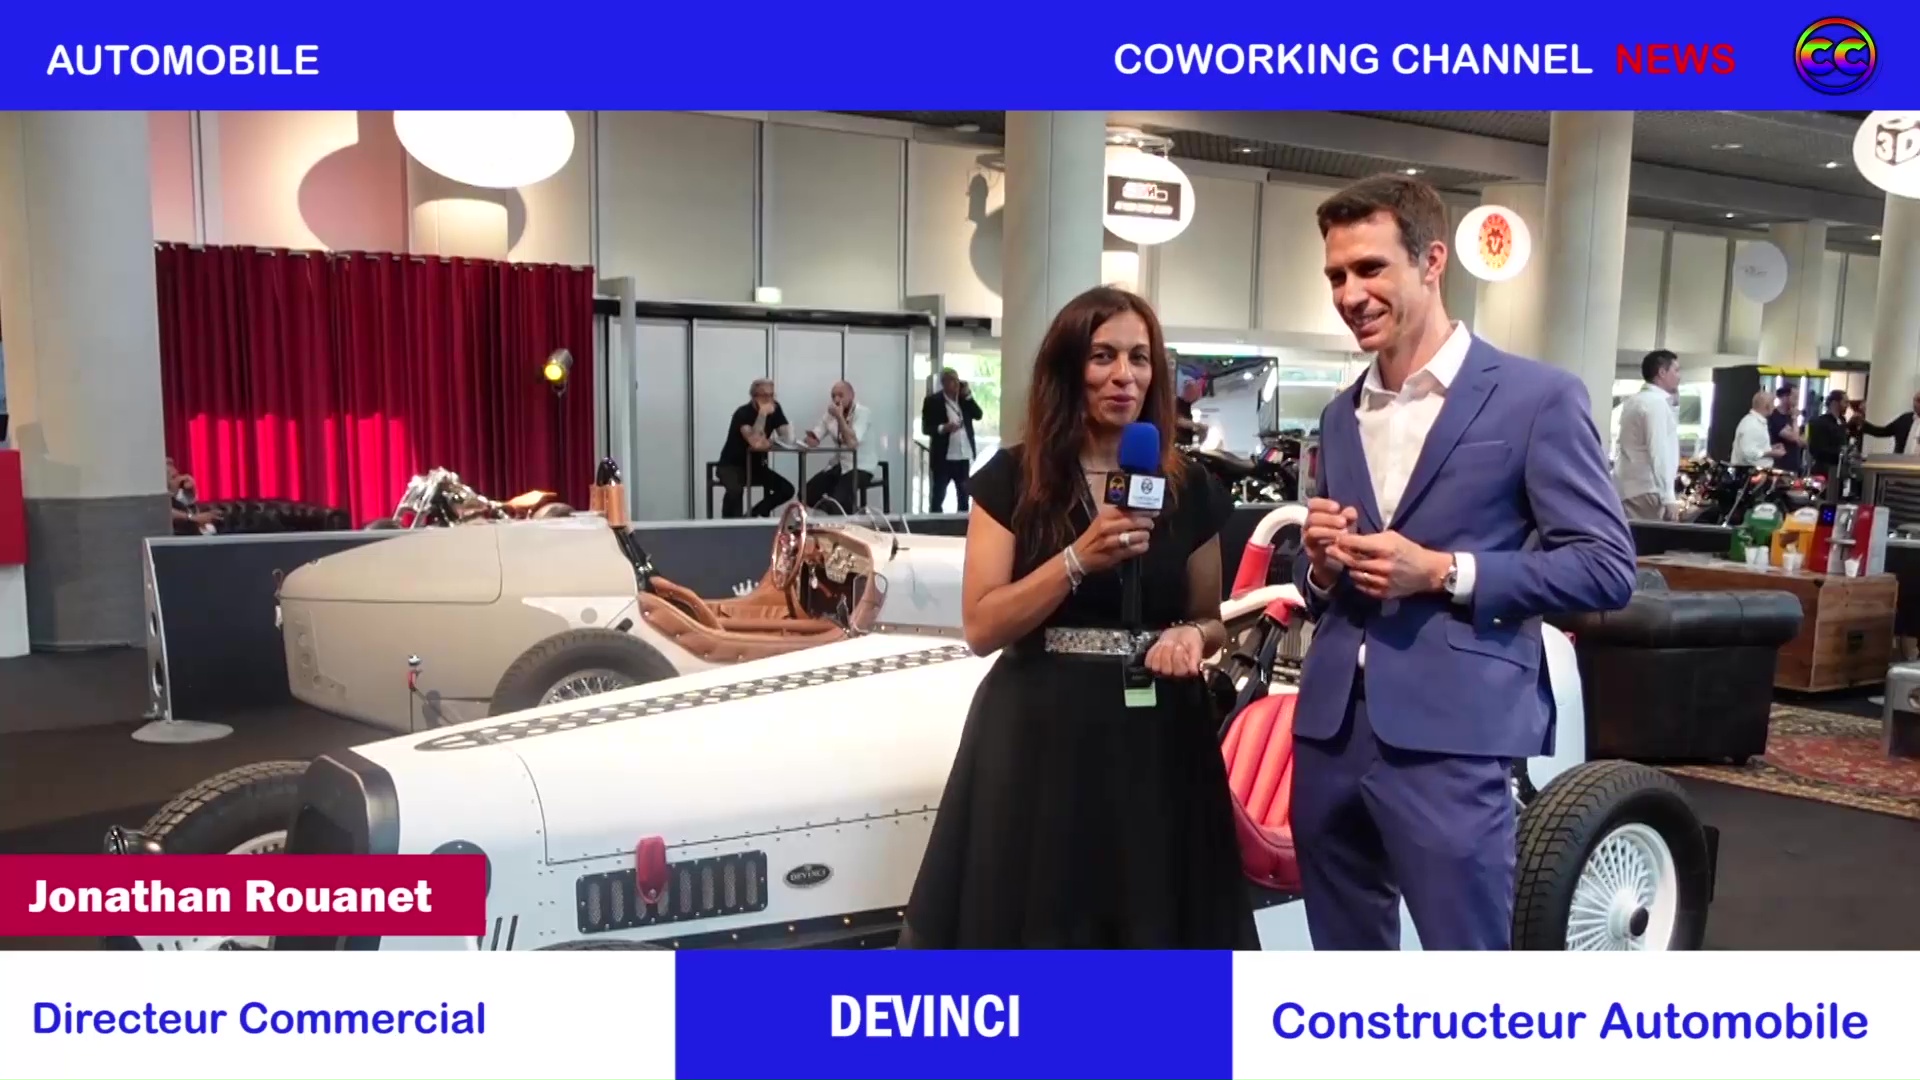 Coworking Channel présente DEVINCI cars Salon Top Marques Monaco 2022, Coworking Channel, Meriem Belazouz, Jonathan Rouanet